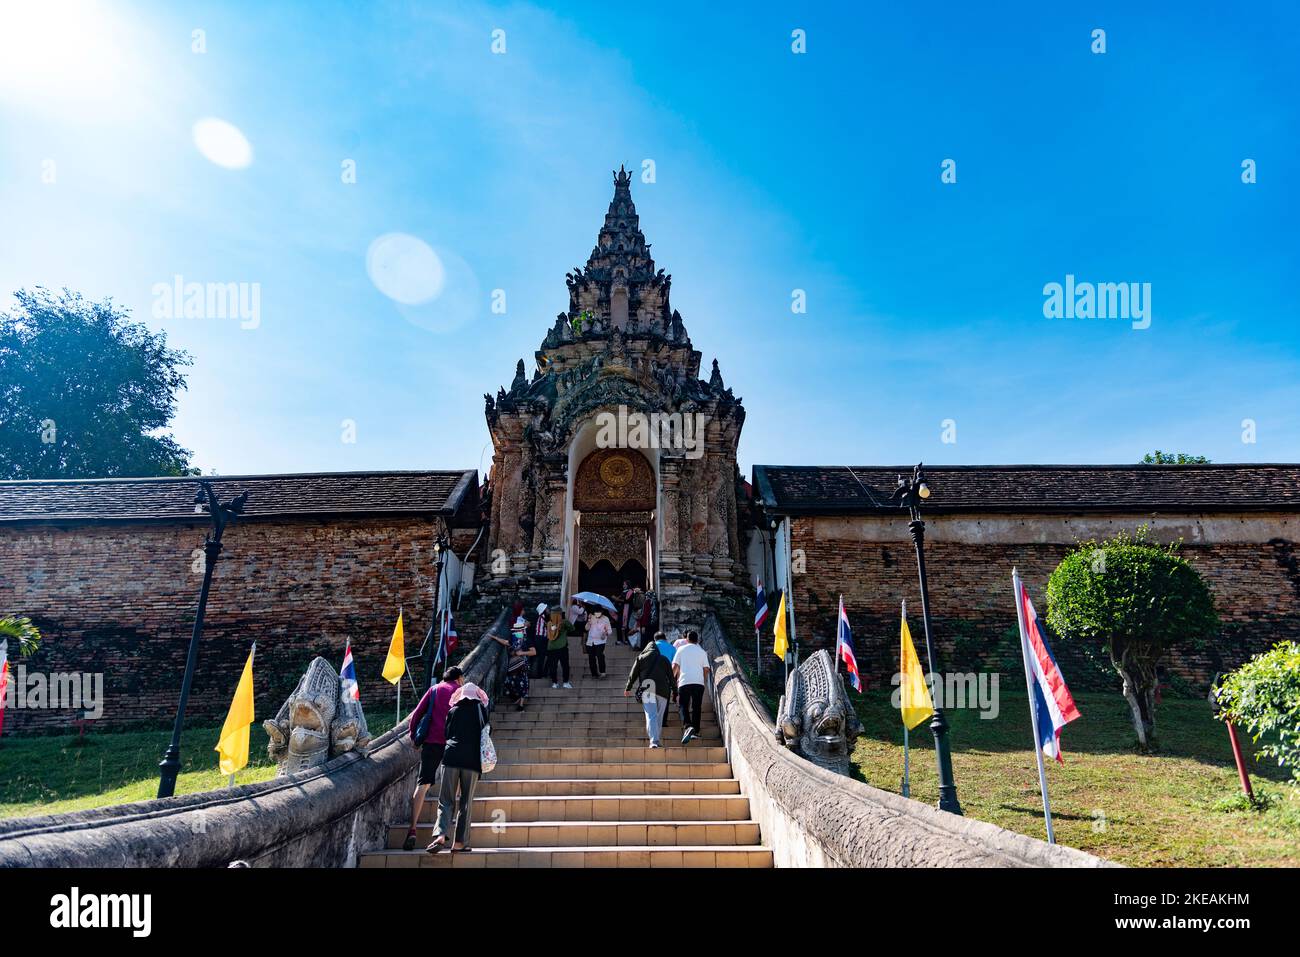 Templo del Buda Esmeralda (Wat Phra Kaew): el templo budista más famoso y venerado de todo Tailandia tiene esta distinción p Stock Photo